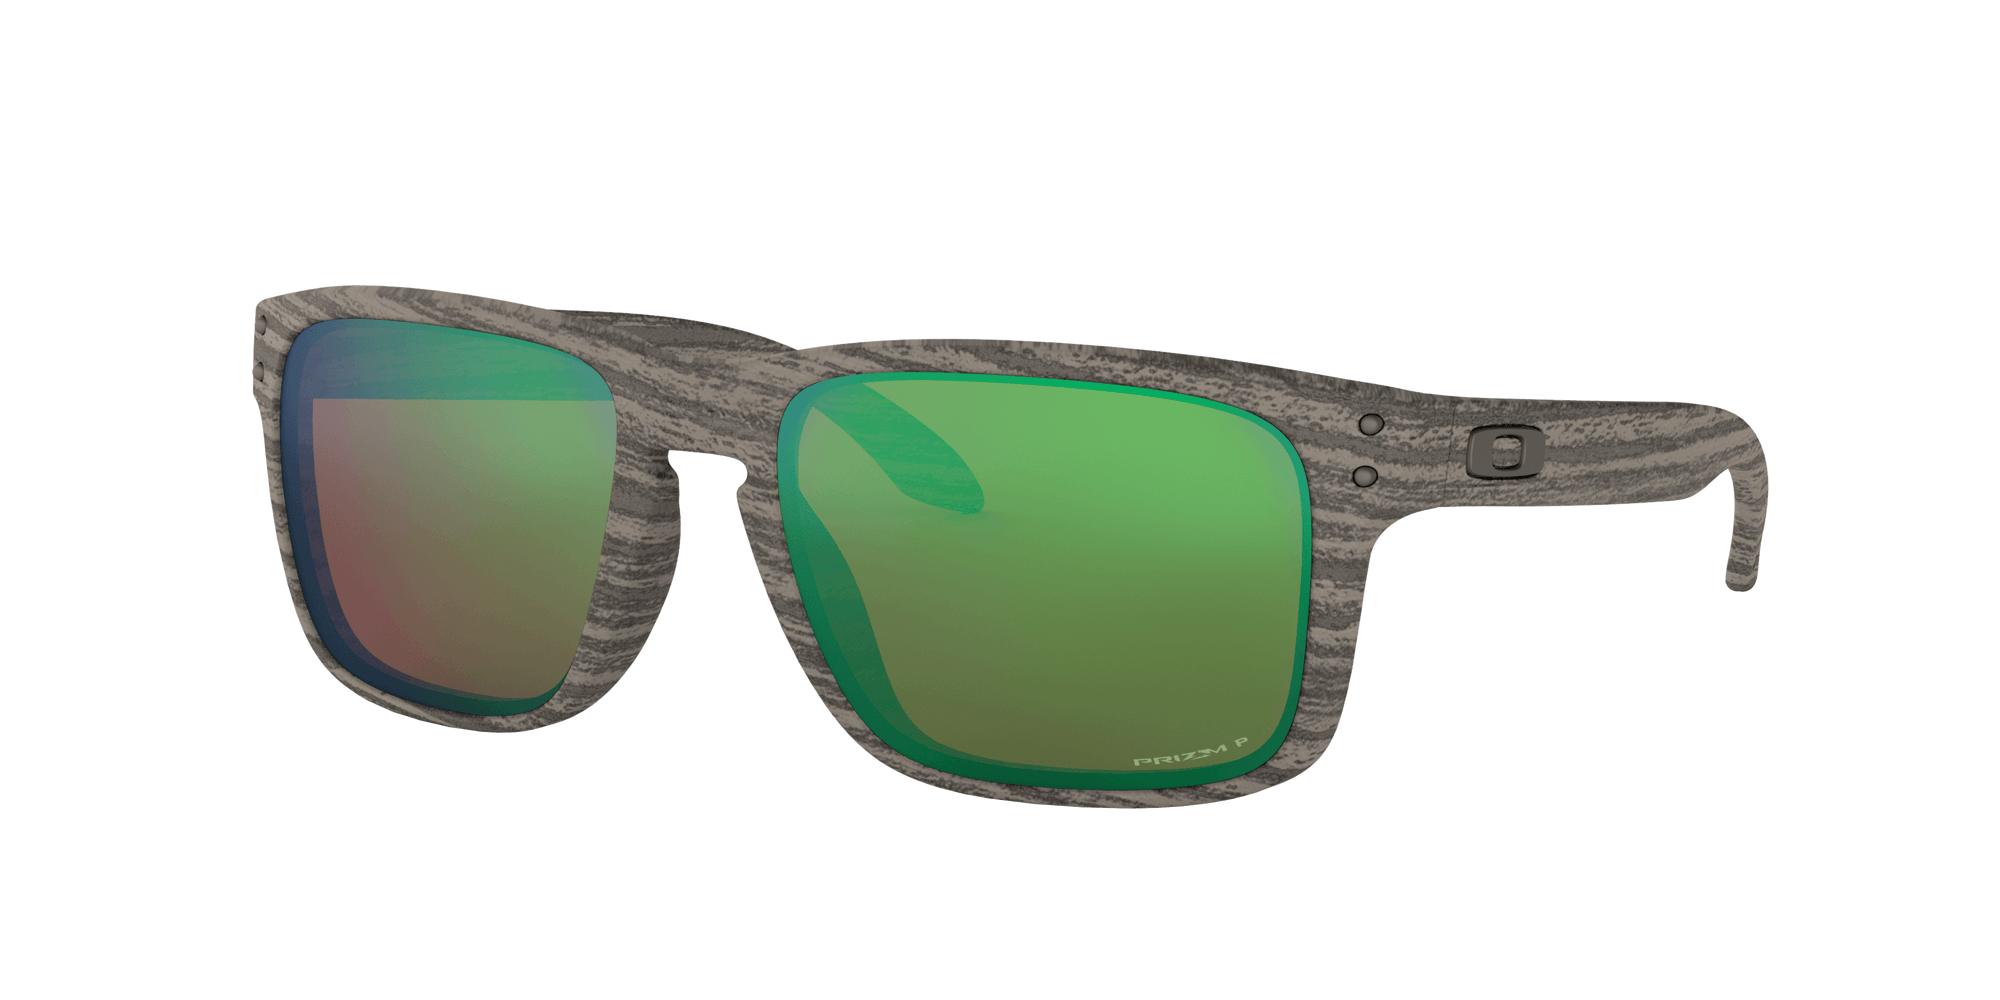 OAKLEY Holbrook Woodgrain - Prizm Shallow Water Polarized Sunglasses SUNGLASSES - Oakley Sunglasses Oakley 